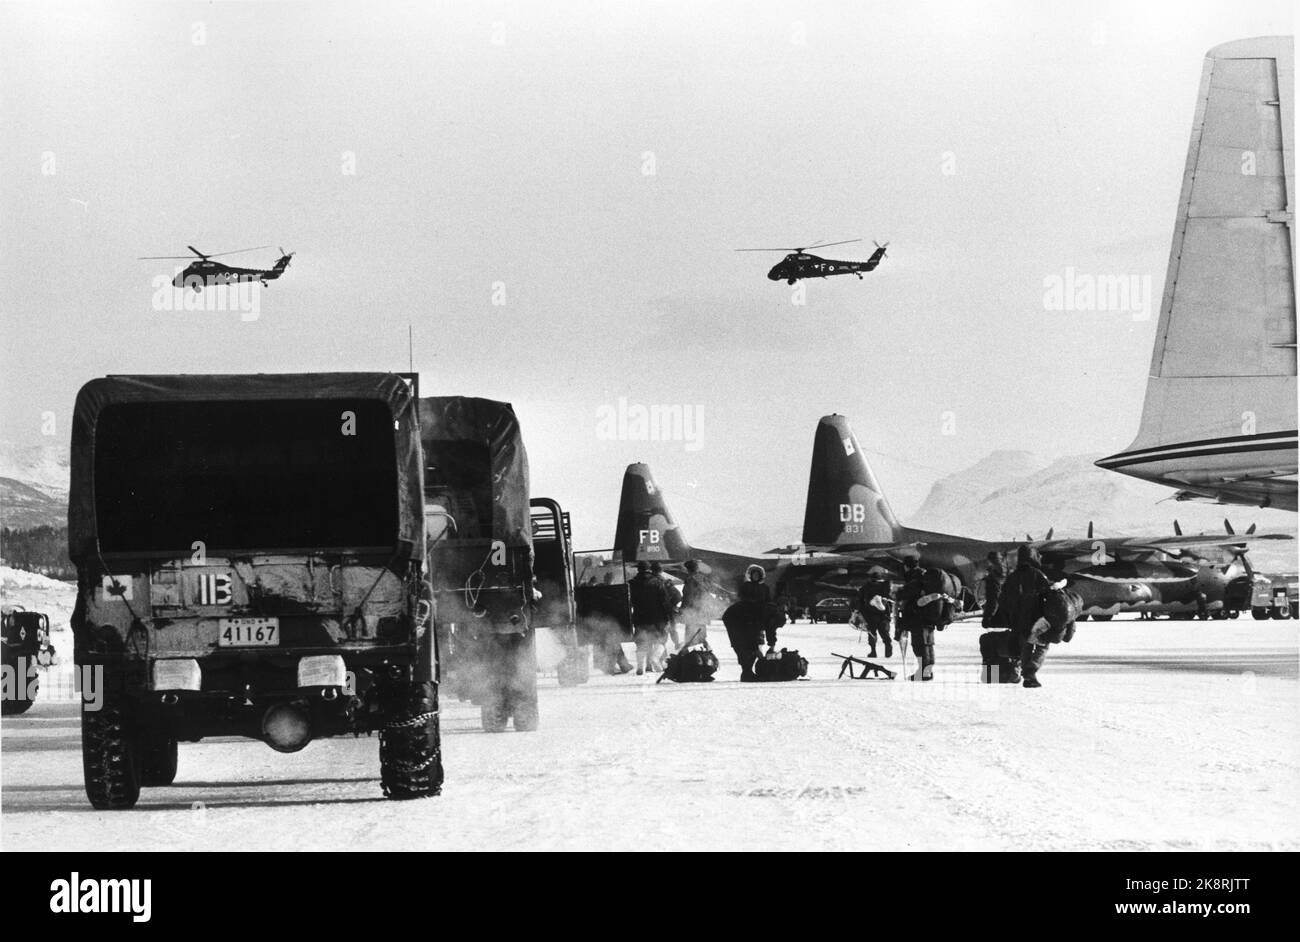 Bardufoss 197003-. Exercice de l'OTAN '' Arctic Express ''. L'équipement MILITAIRE AMÉRICAIN arrive avec un avion de transport. Chariot. Soldats. Hélices. Photo: Archives NTB / dossier Archives NTB: 1989 / exercices OTAN Banque D'Images